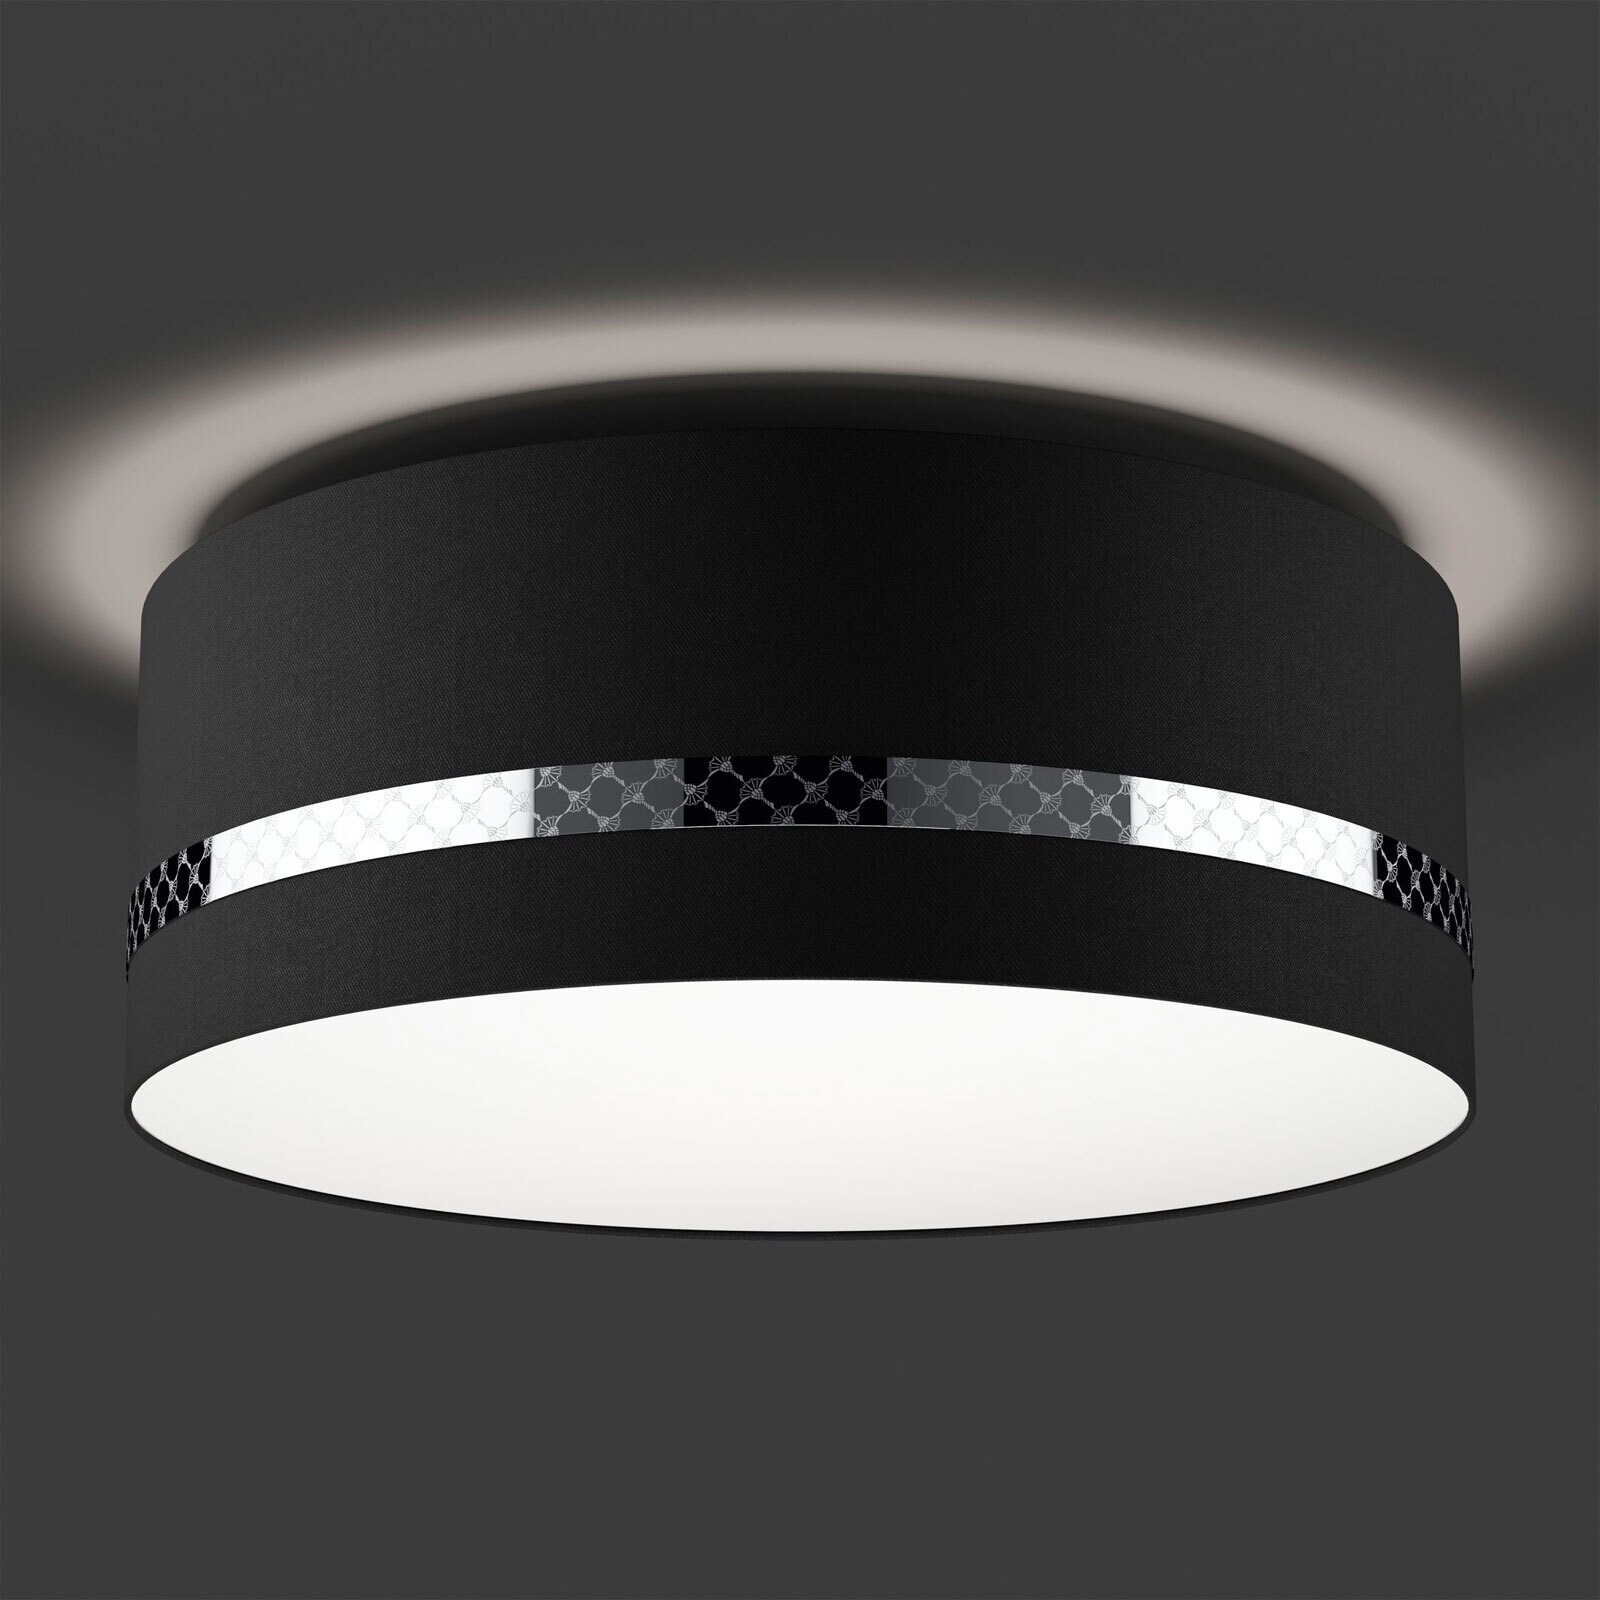 JOOP! Retrofit Deckenlampe ROUND-LIGHTS BLACK 53 cm schwarz /chromfarbig